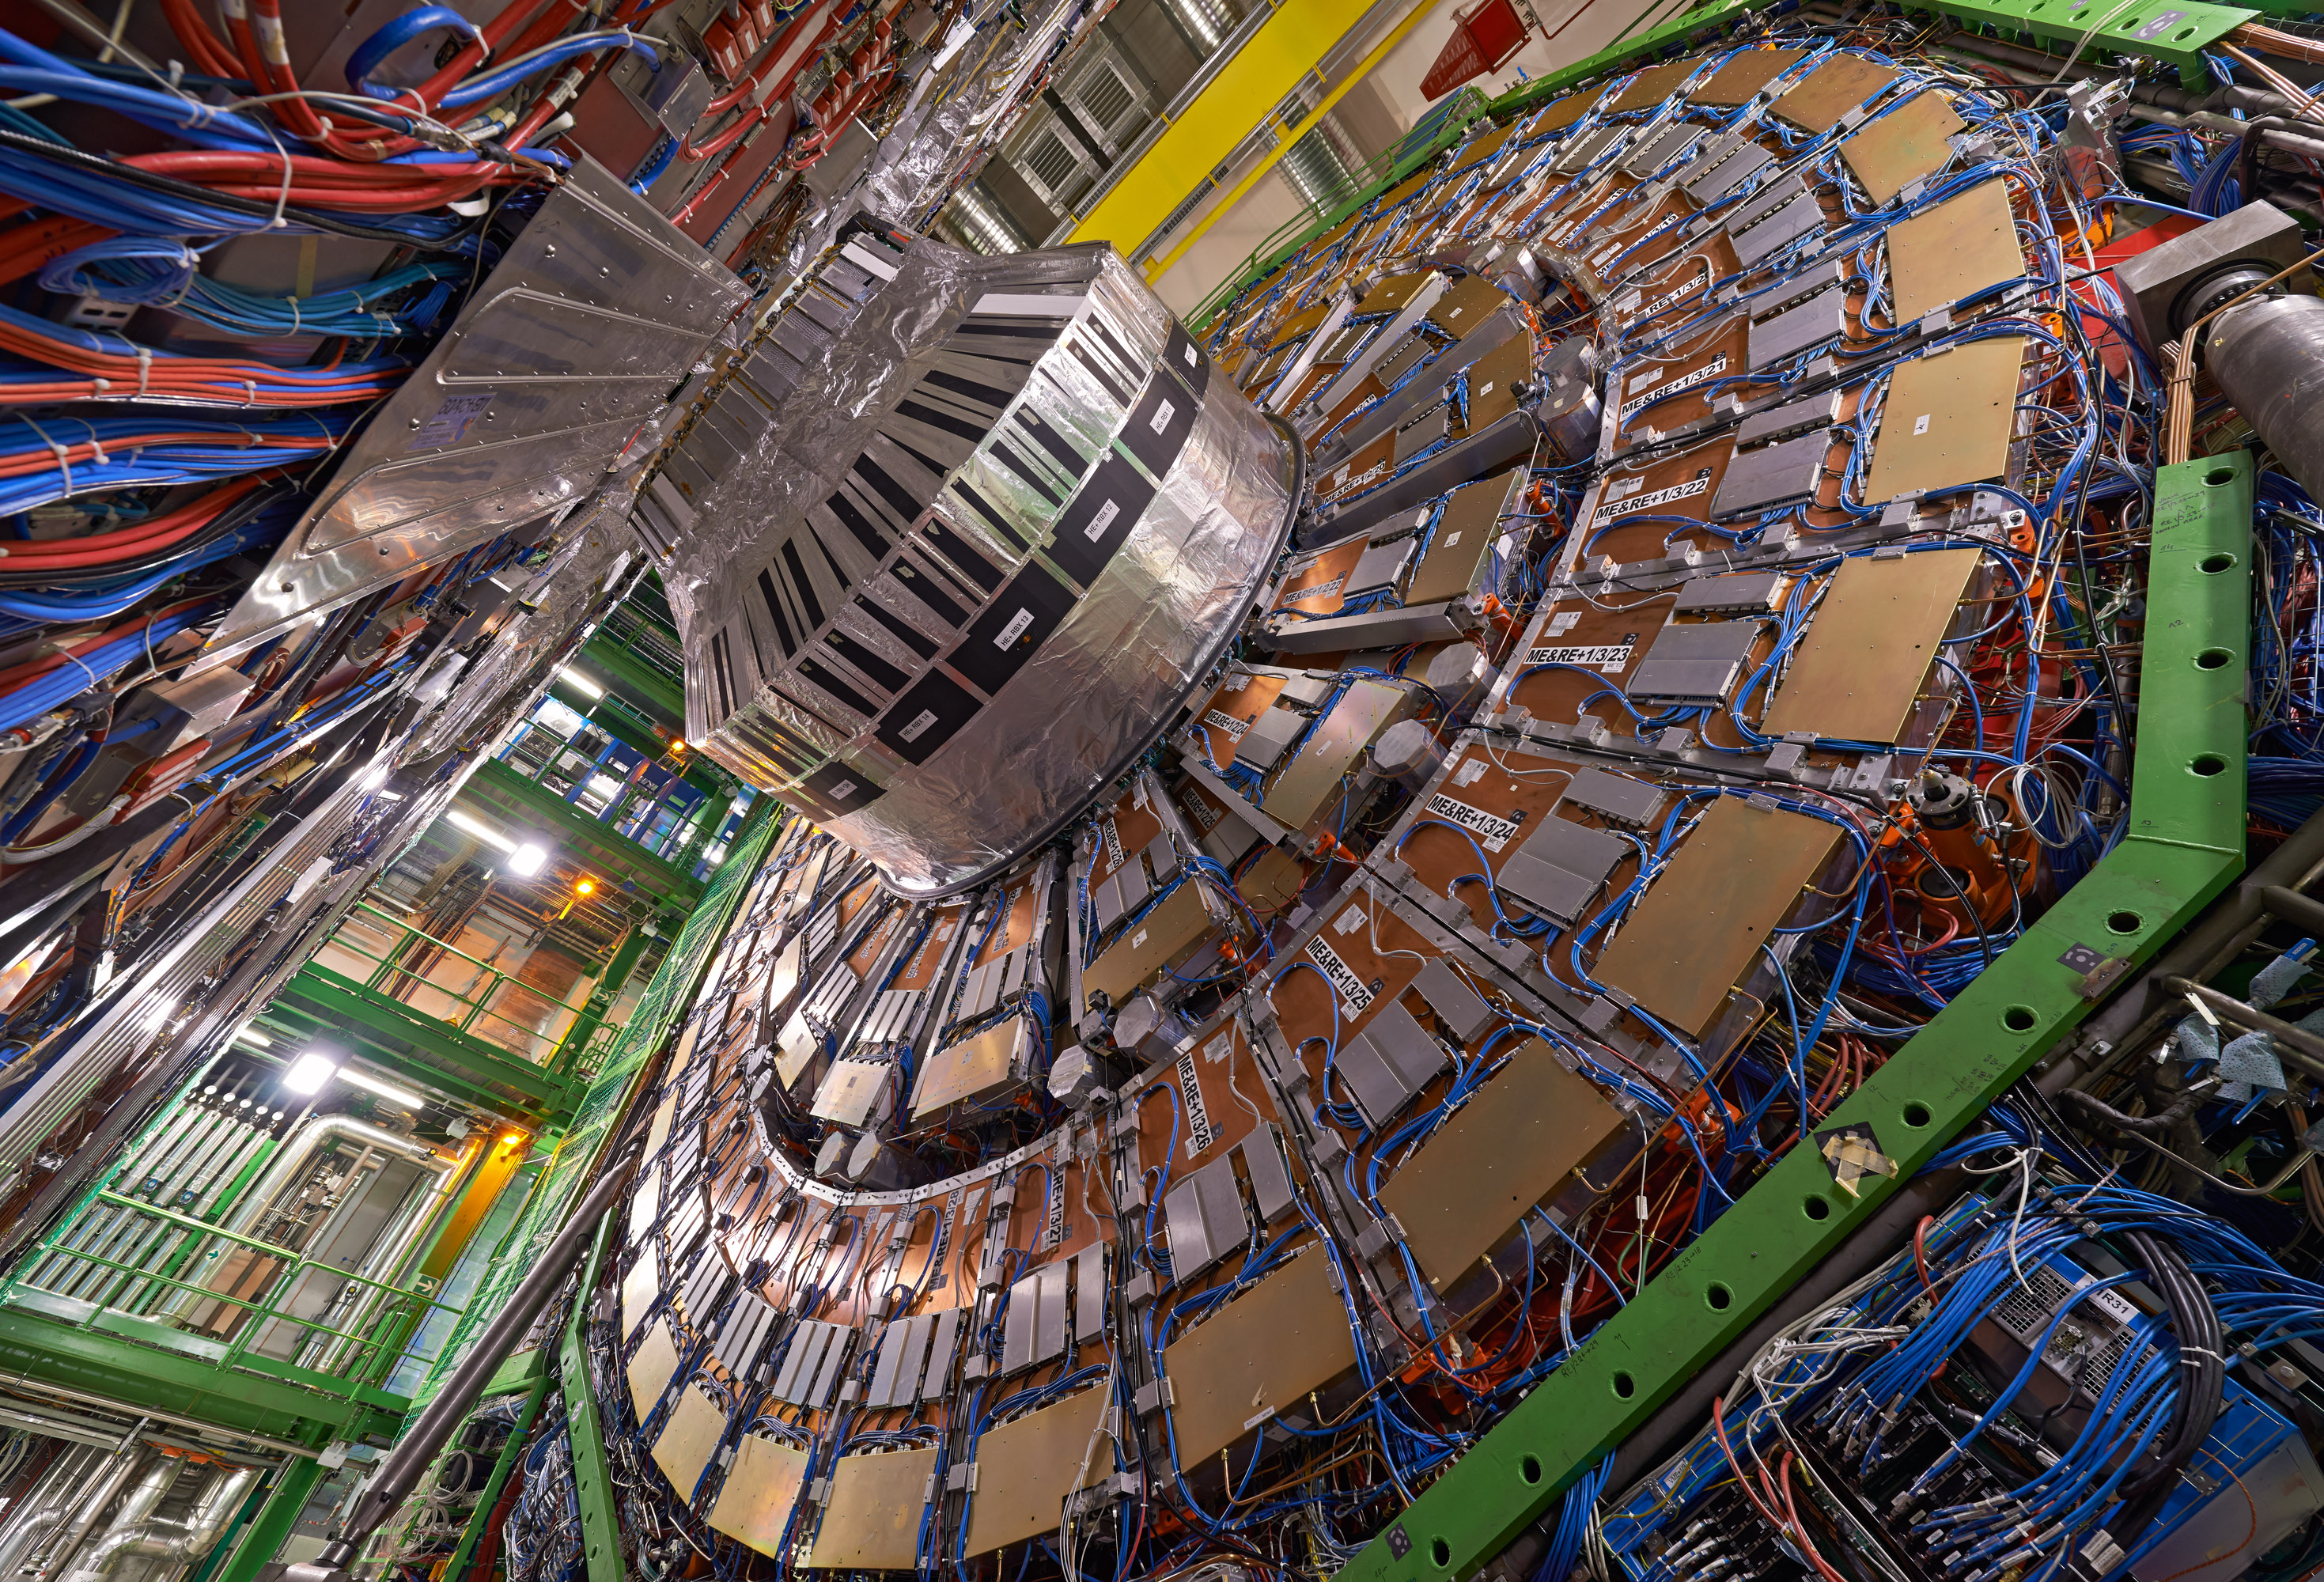 CERNs Large Hadron Collider Restart Was Delayed Due To A 